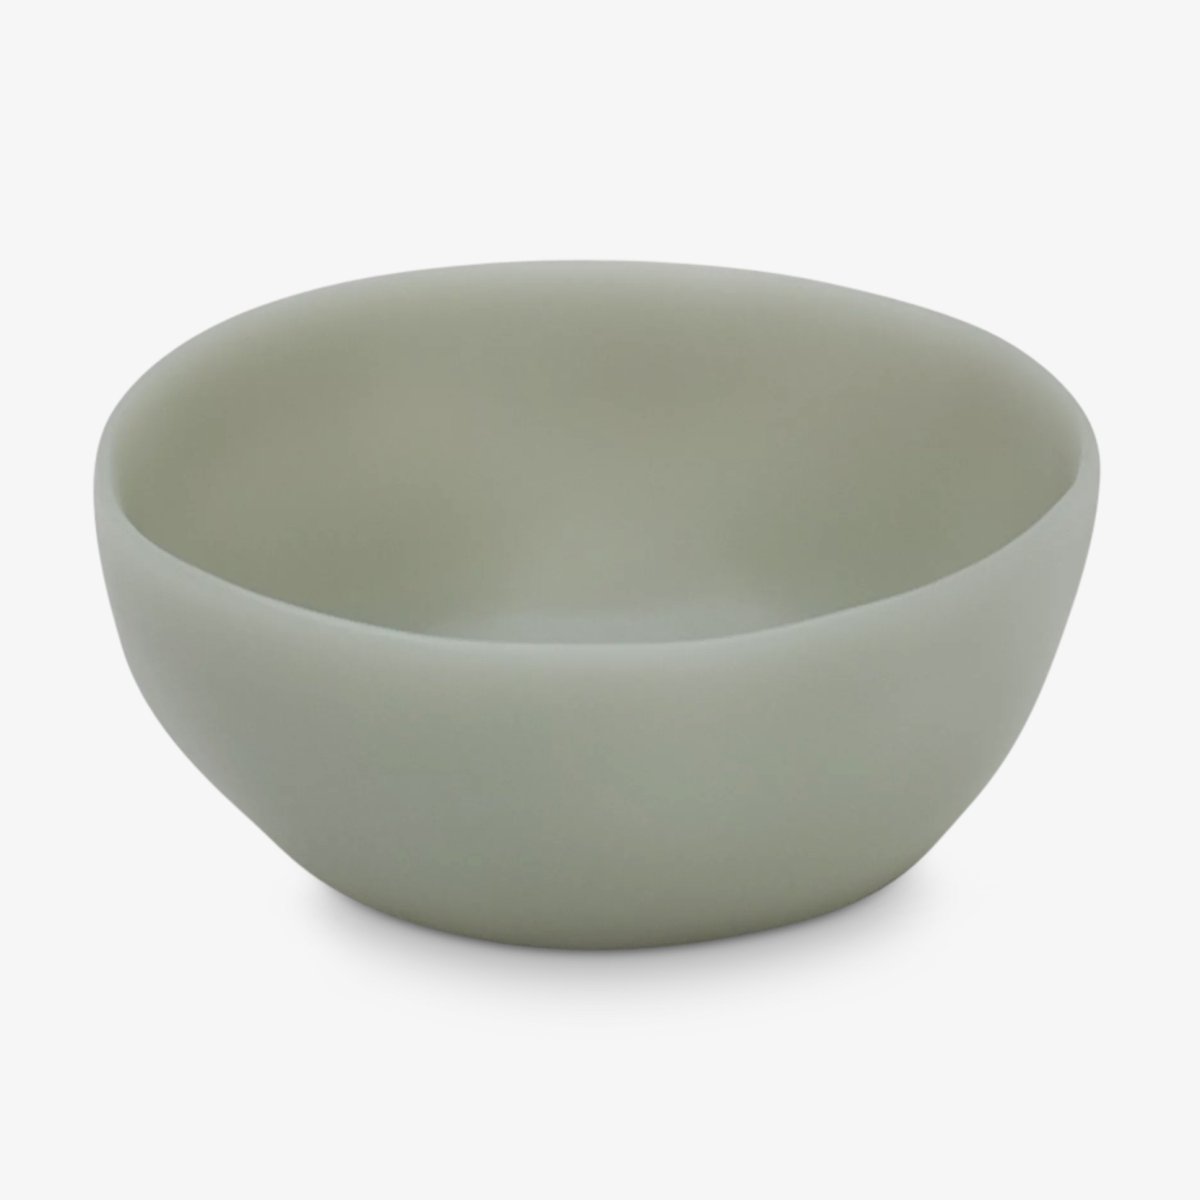 Tina Frey Designs PURIST Petite Bowl - Homebody Denver